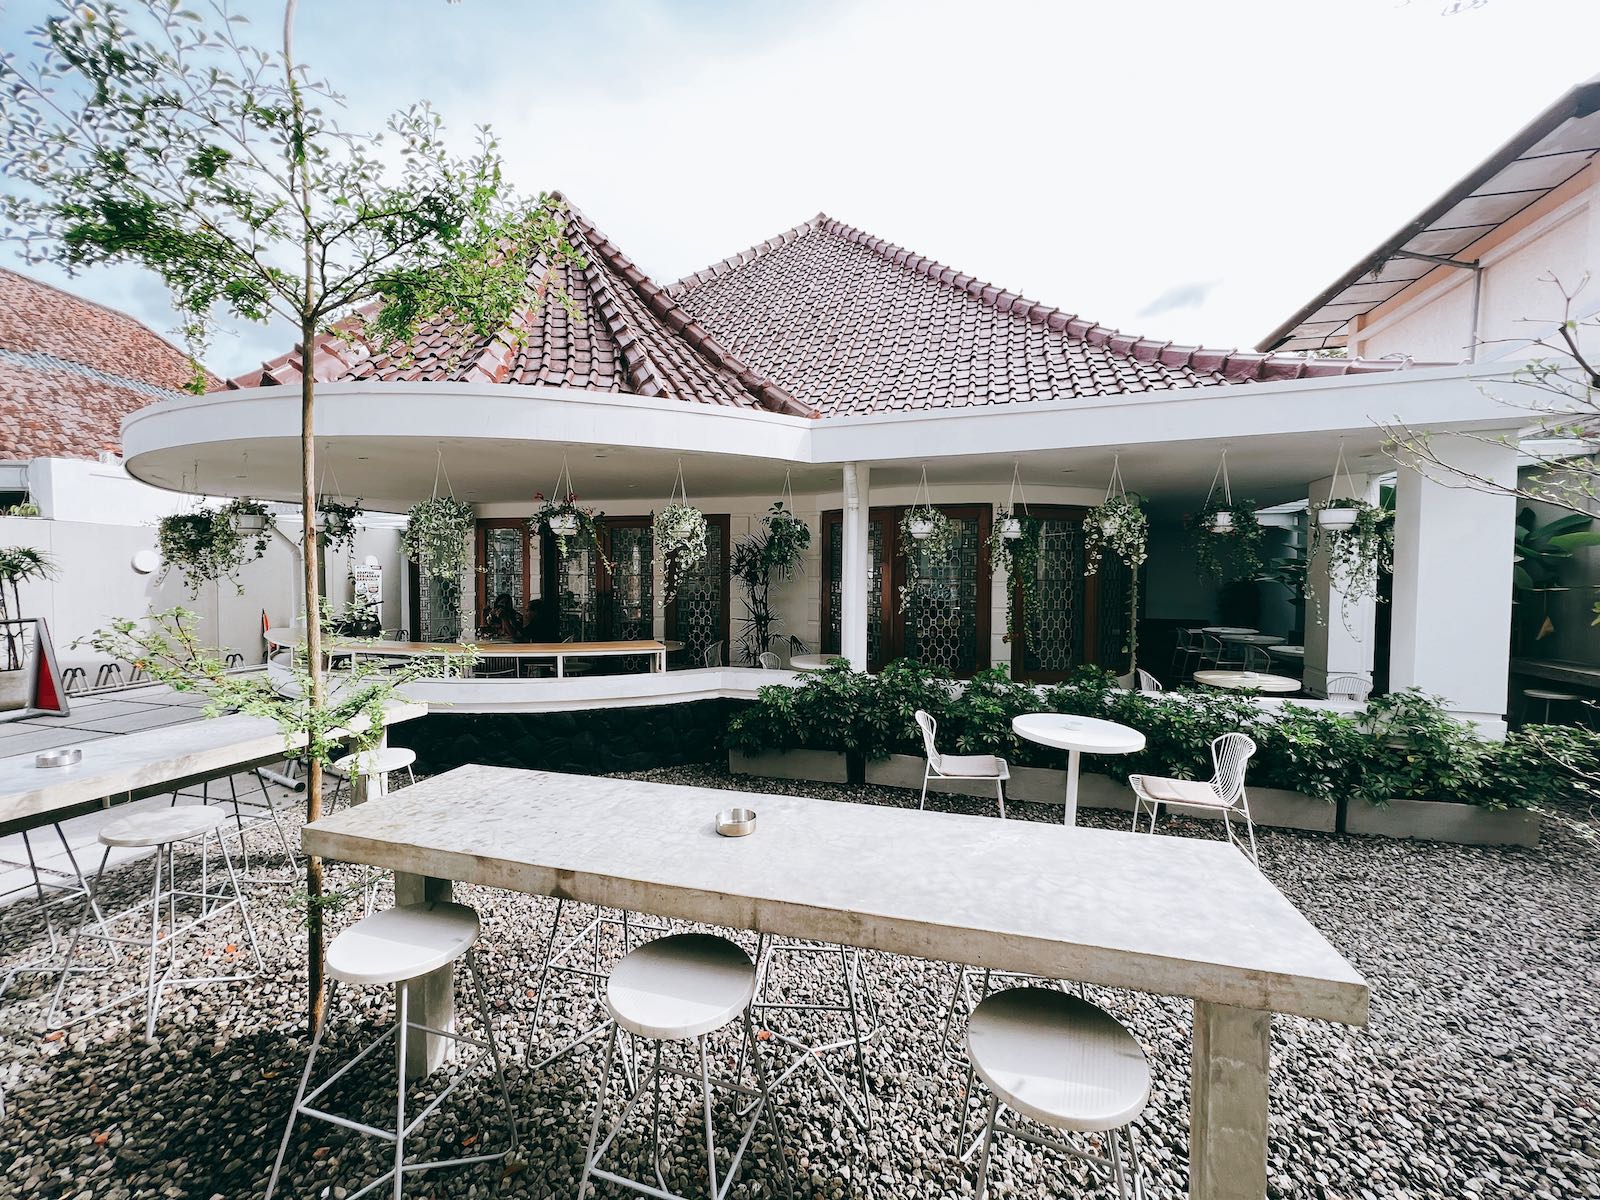 Bandung Cafes Tjimanoek43 Outdoor